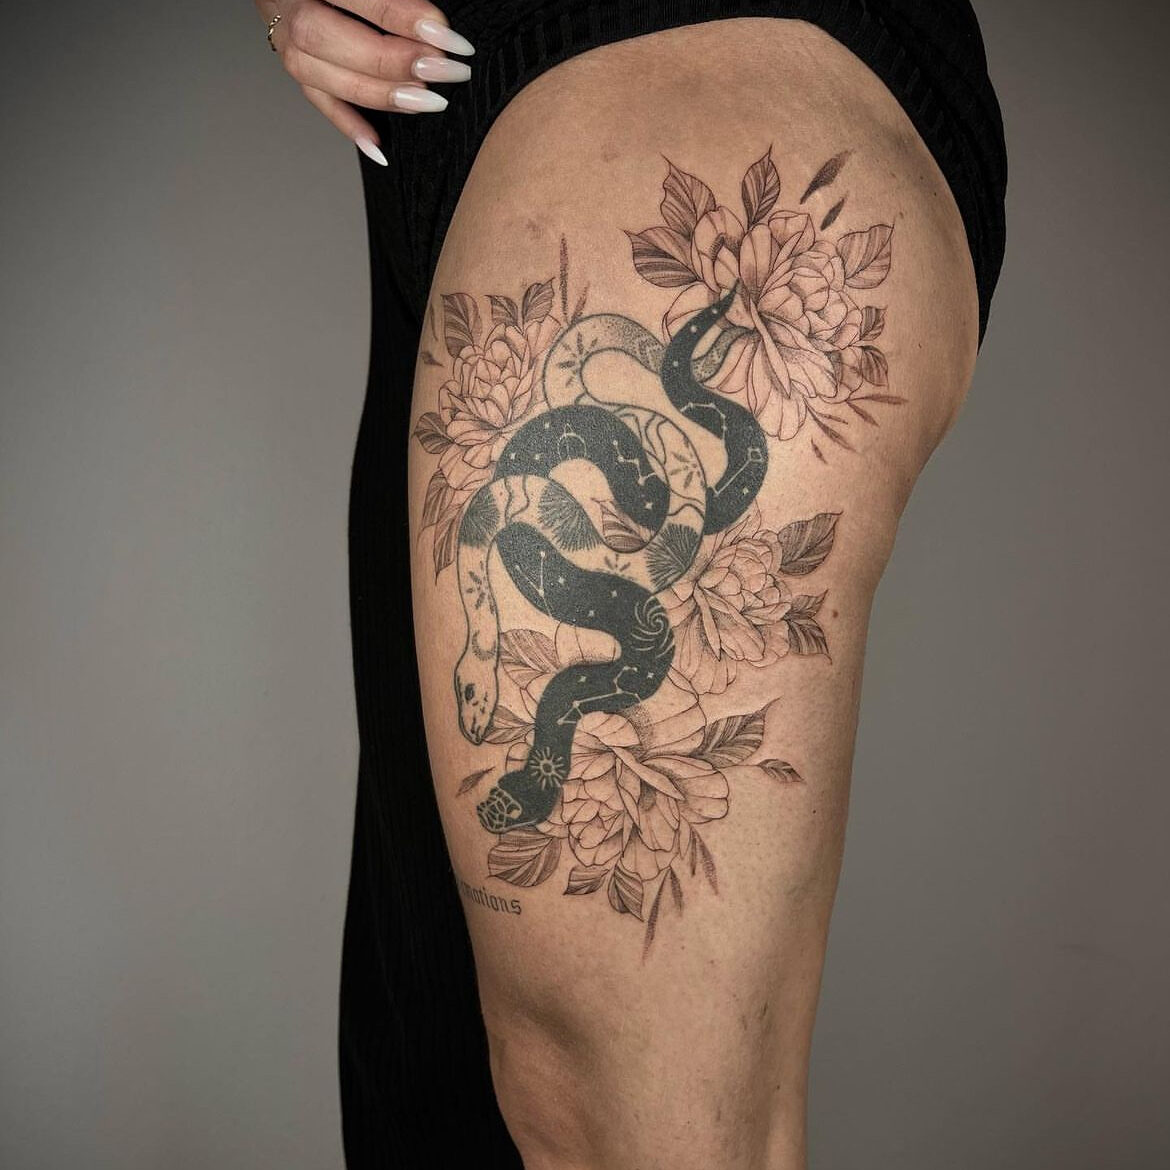 Florales und ornamentales Tattoo einer Schlange, umgeben von Blumen, erstellt von lenacreatestattoo.